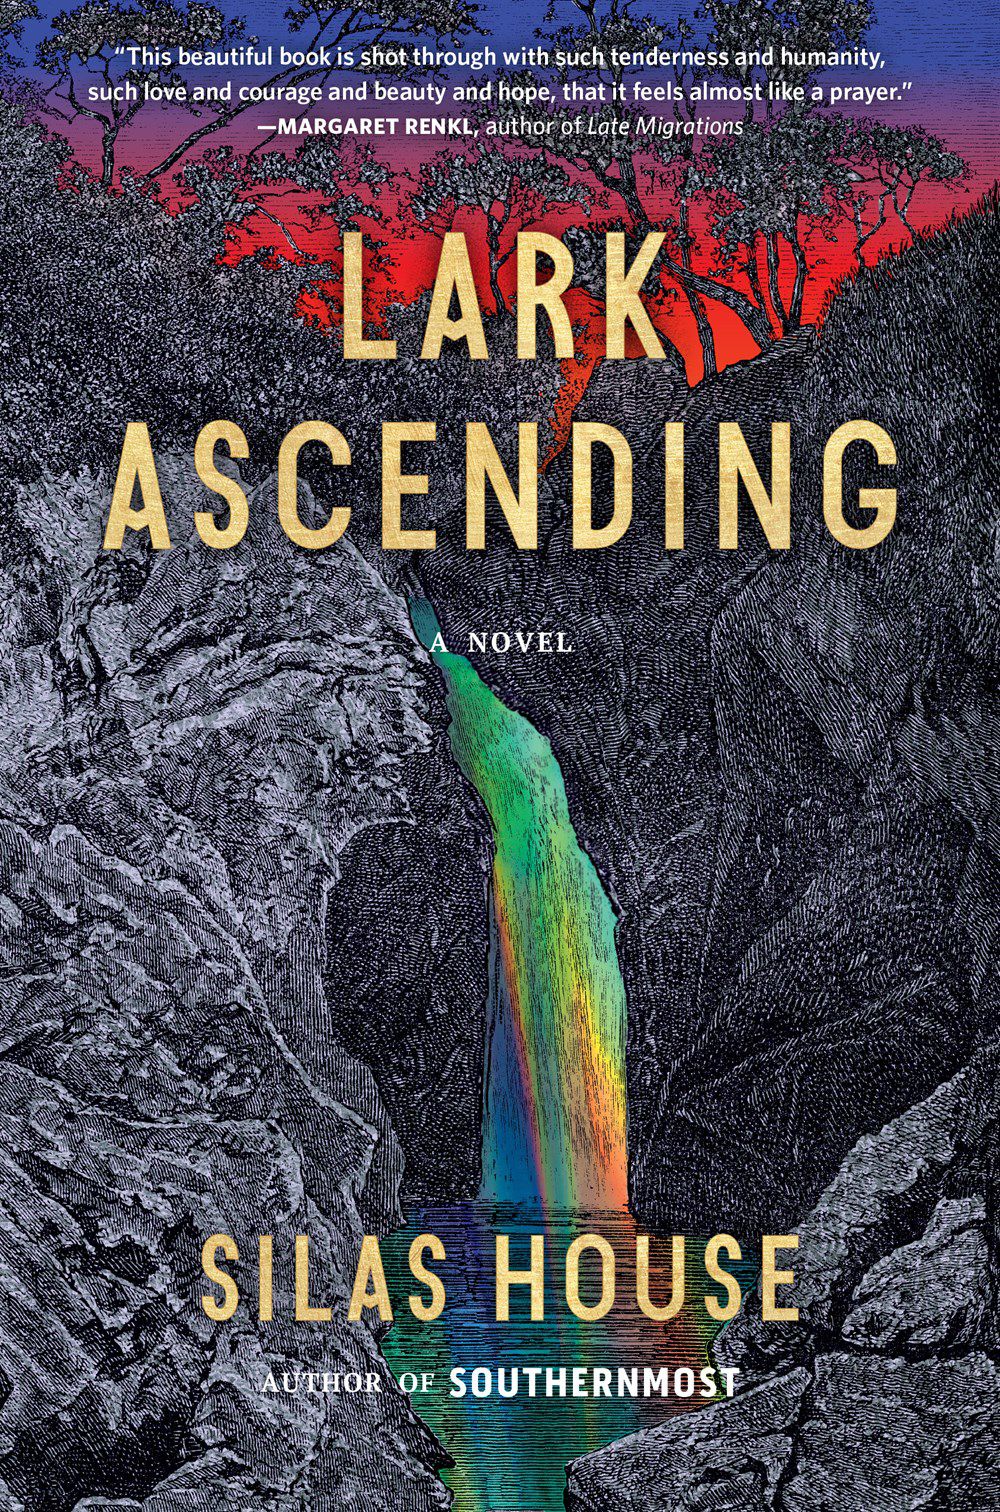 Immagine di copertina di Lark Ascending di Silas House, con cascata color arcobaleno